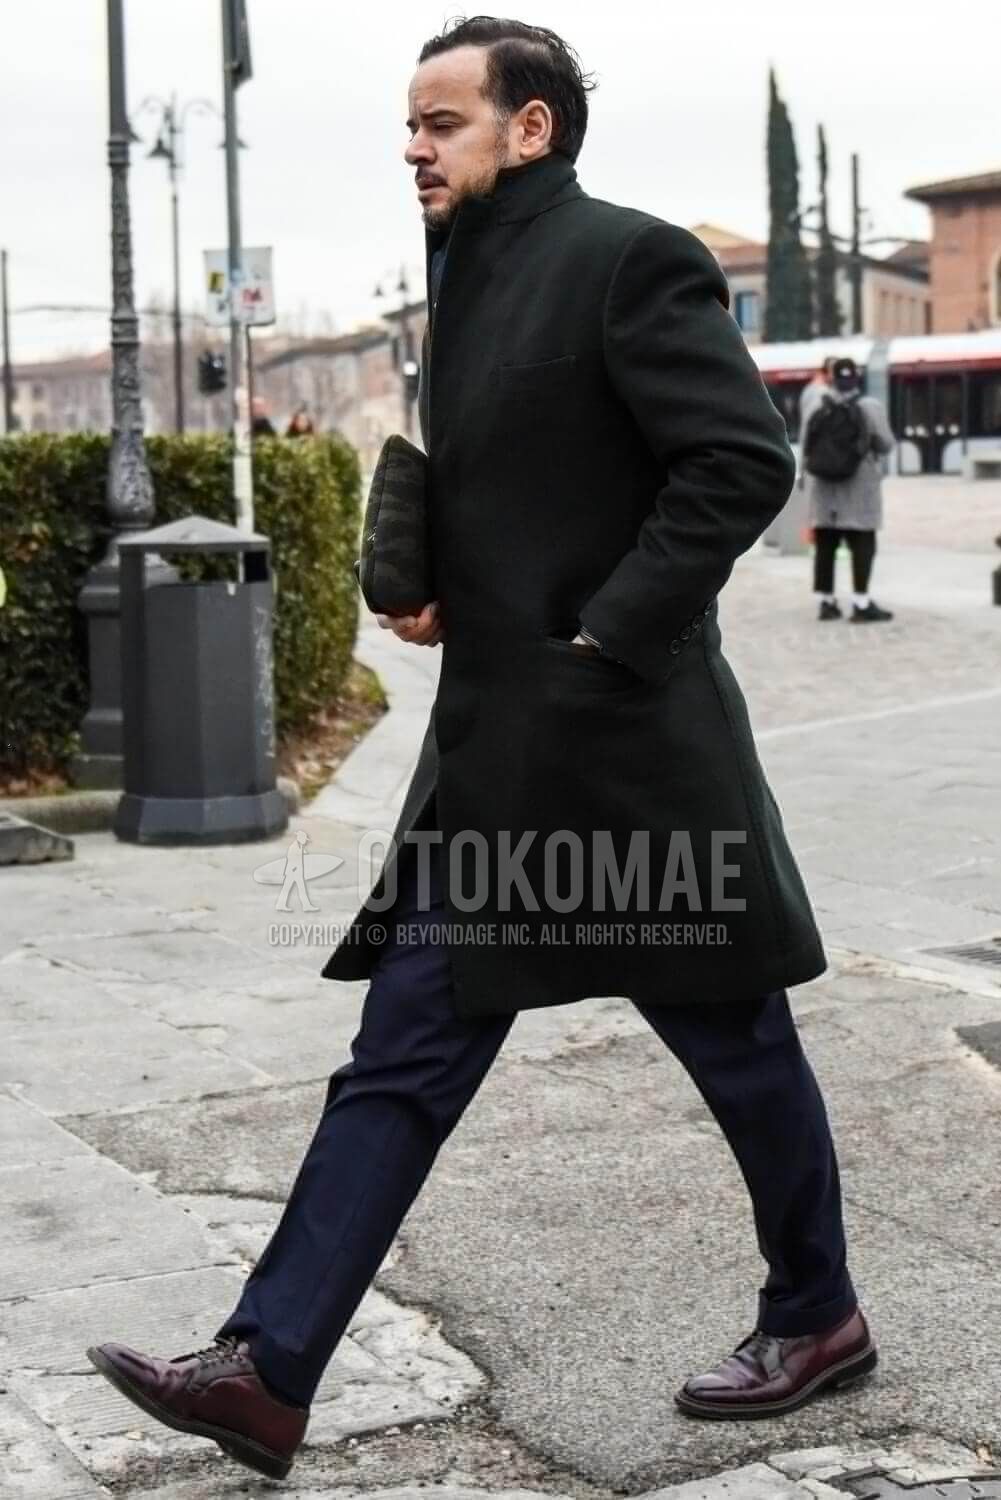 黒コート コーデ メンズ特集 注目の着こなしとおすすめアイテムを紹介 メンズファッションメディア Otokomae 男前研究所 ページ 2 ページ 2